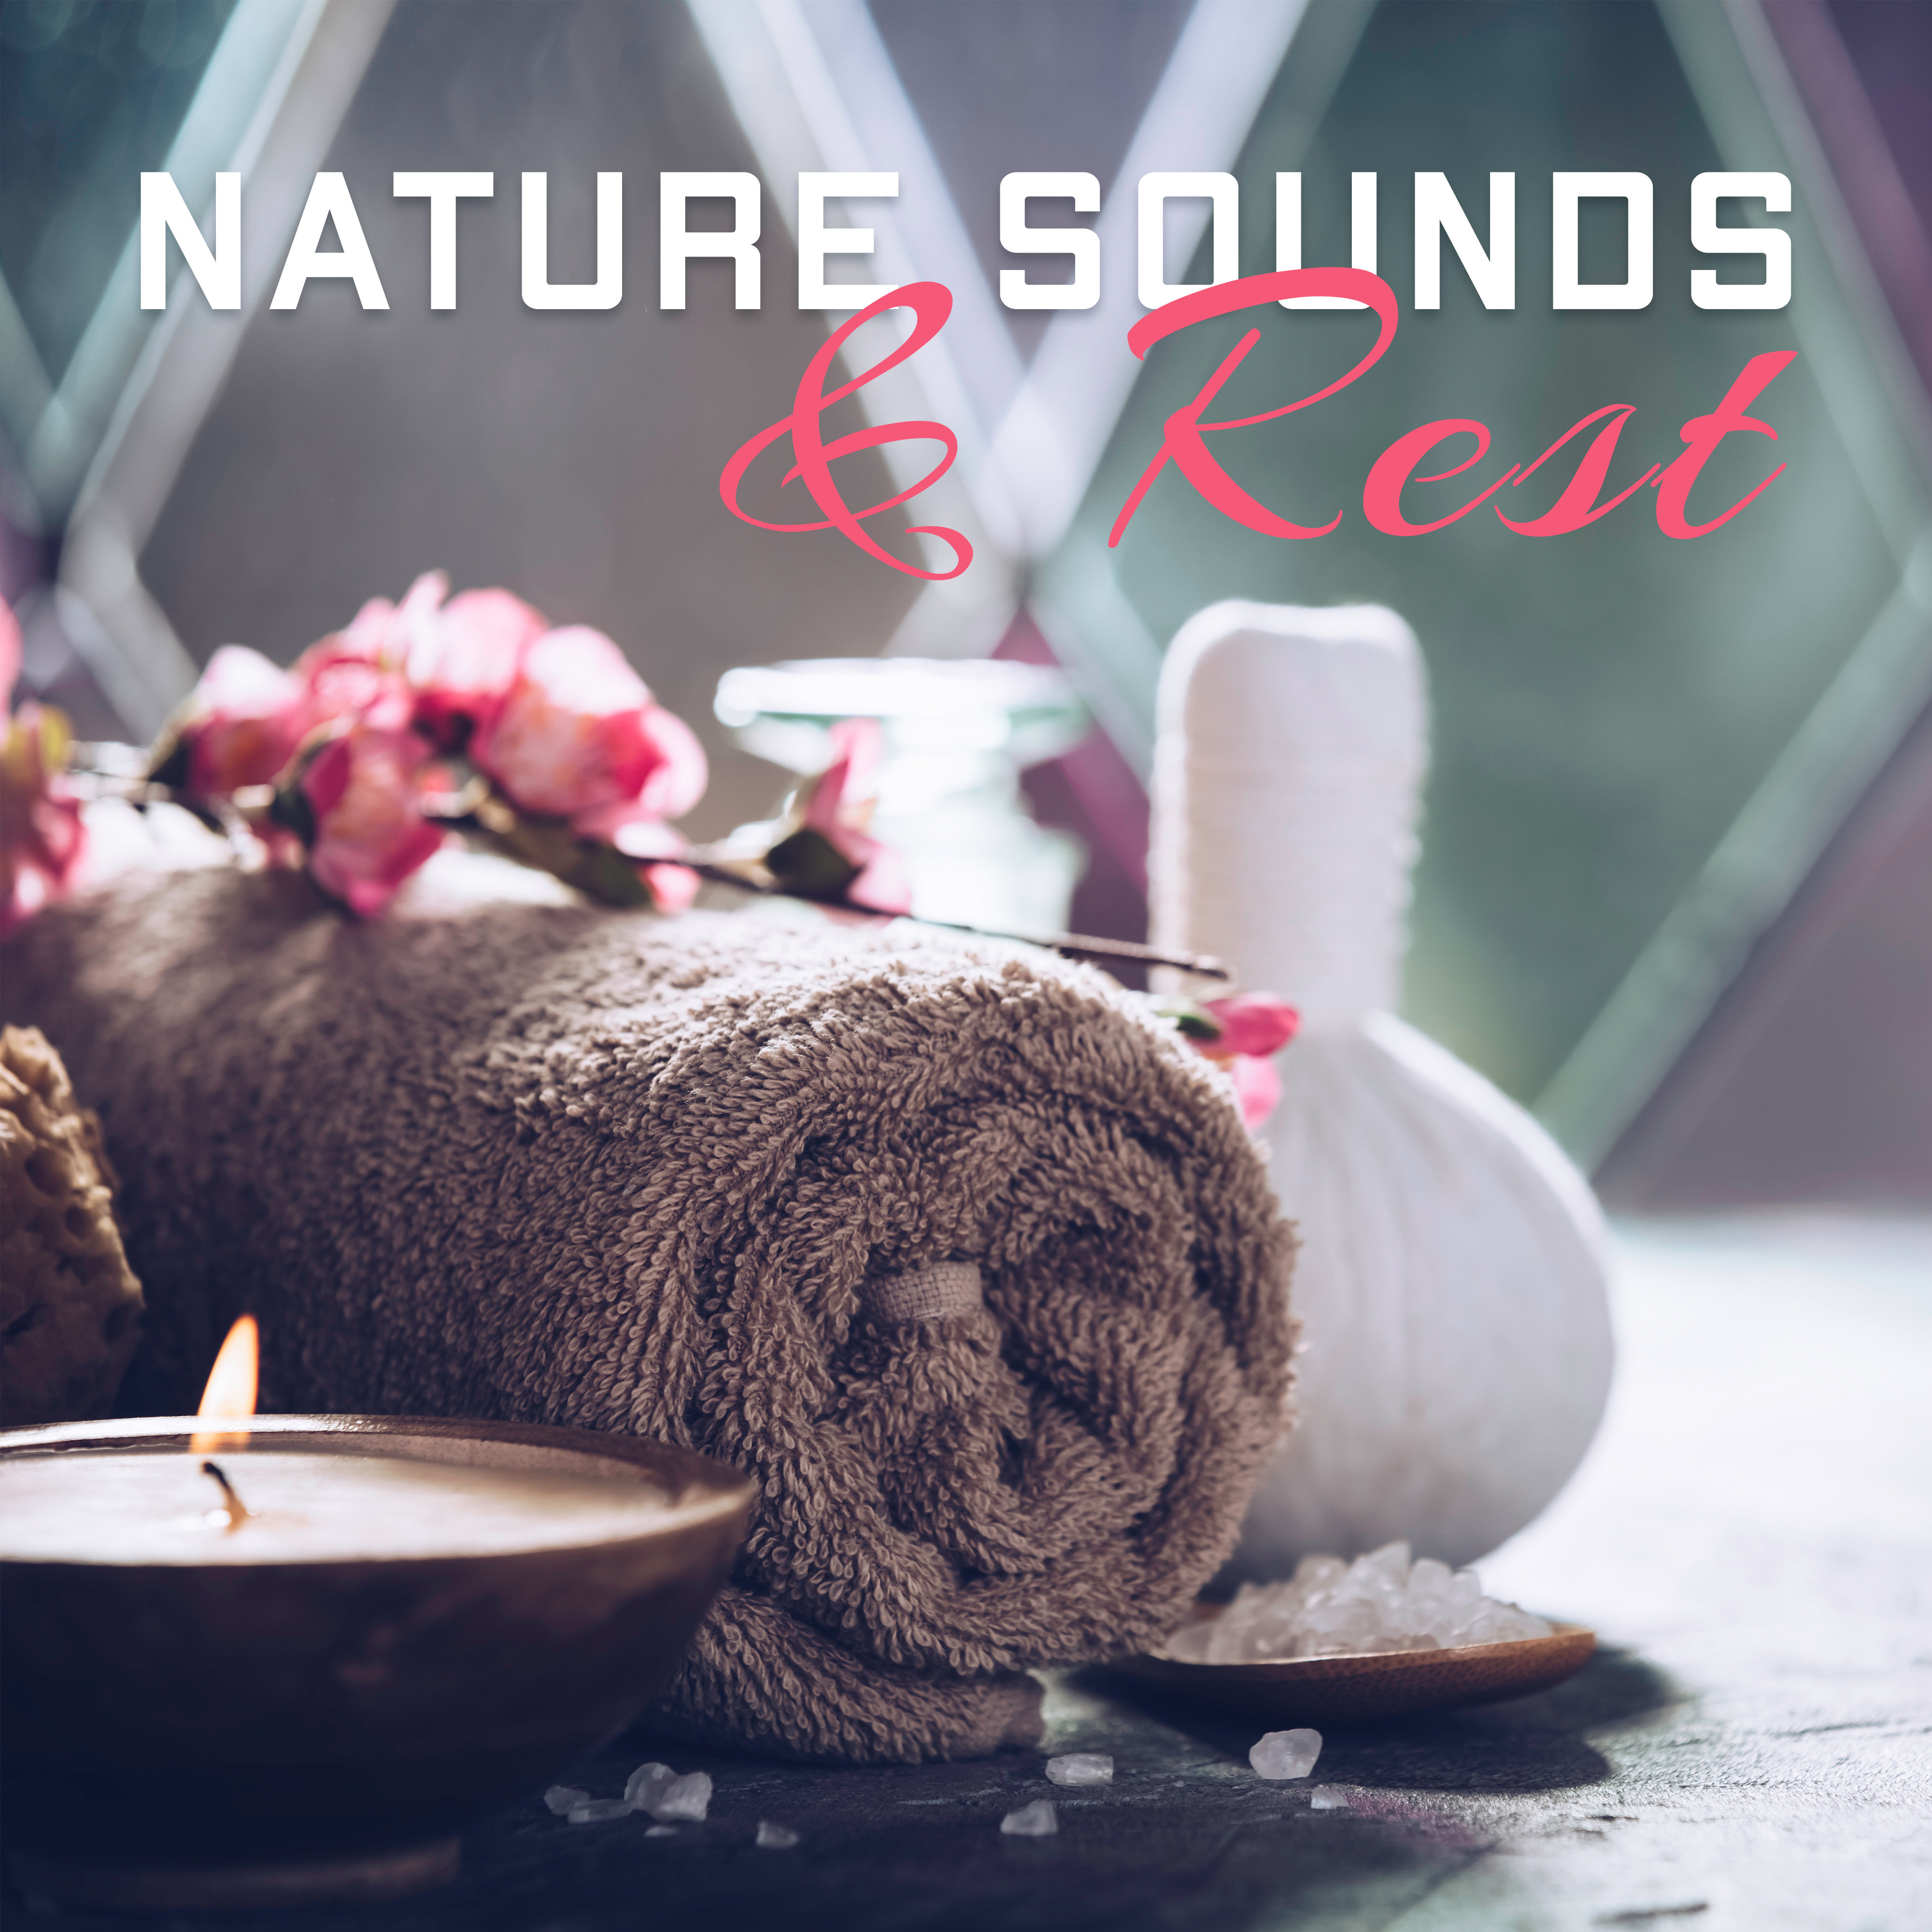 Nature Sounds & Rest